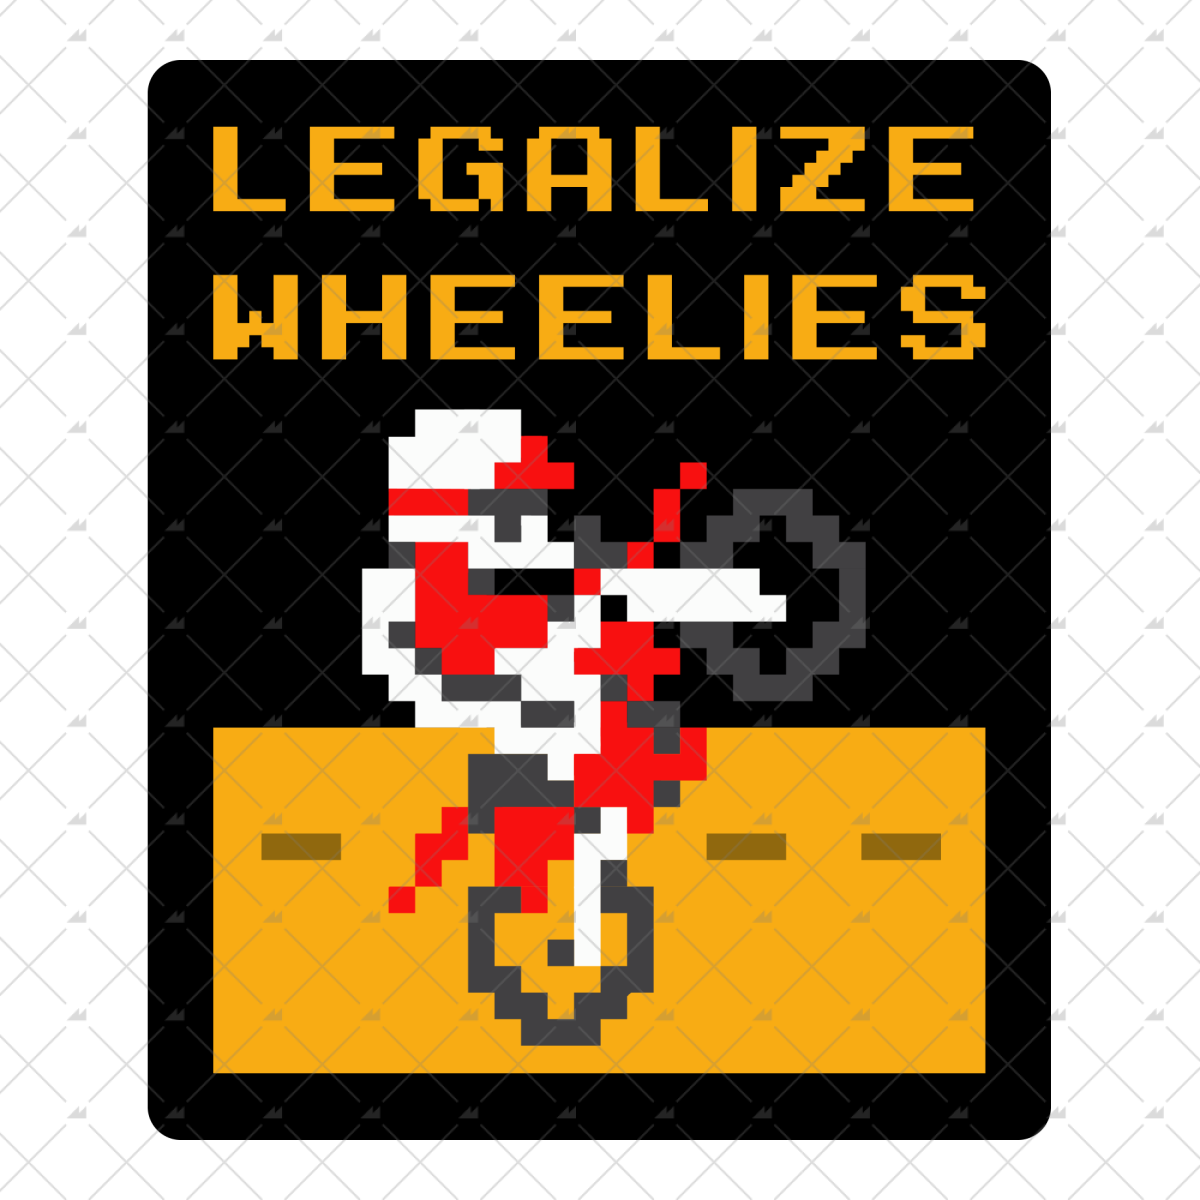 Legalize Wheelies - Sticker